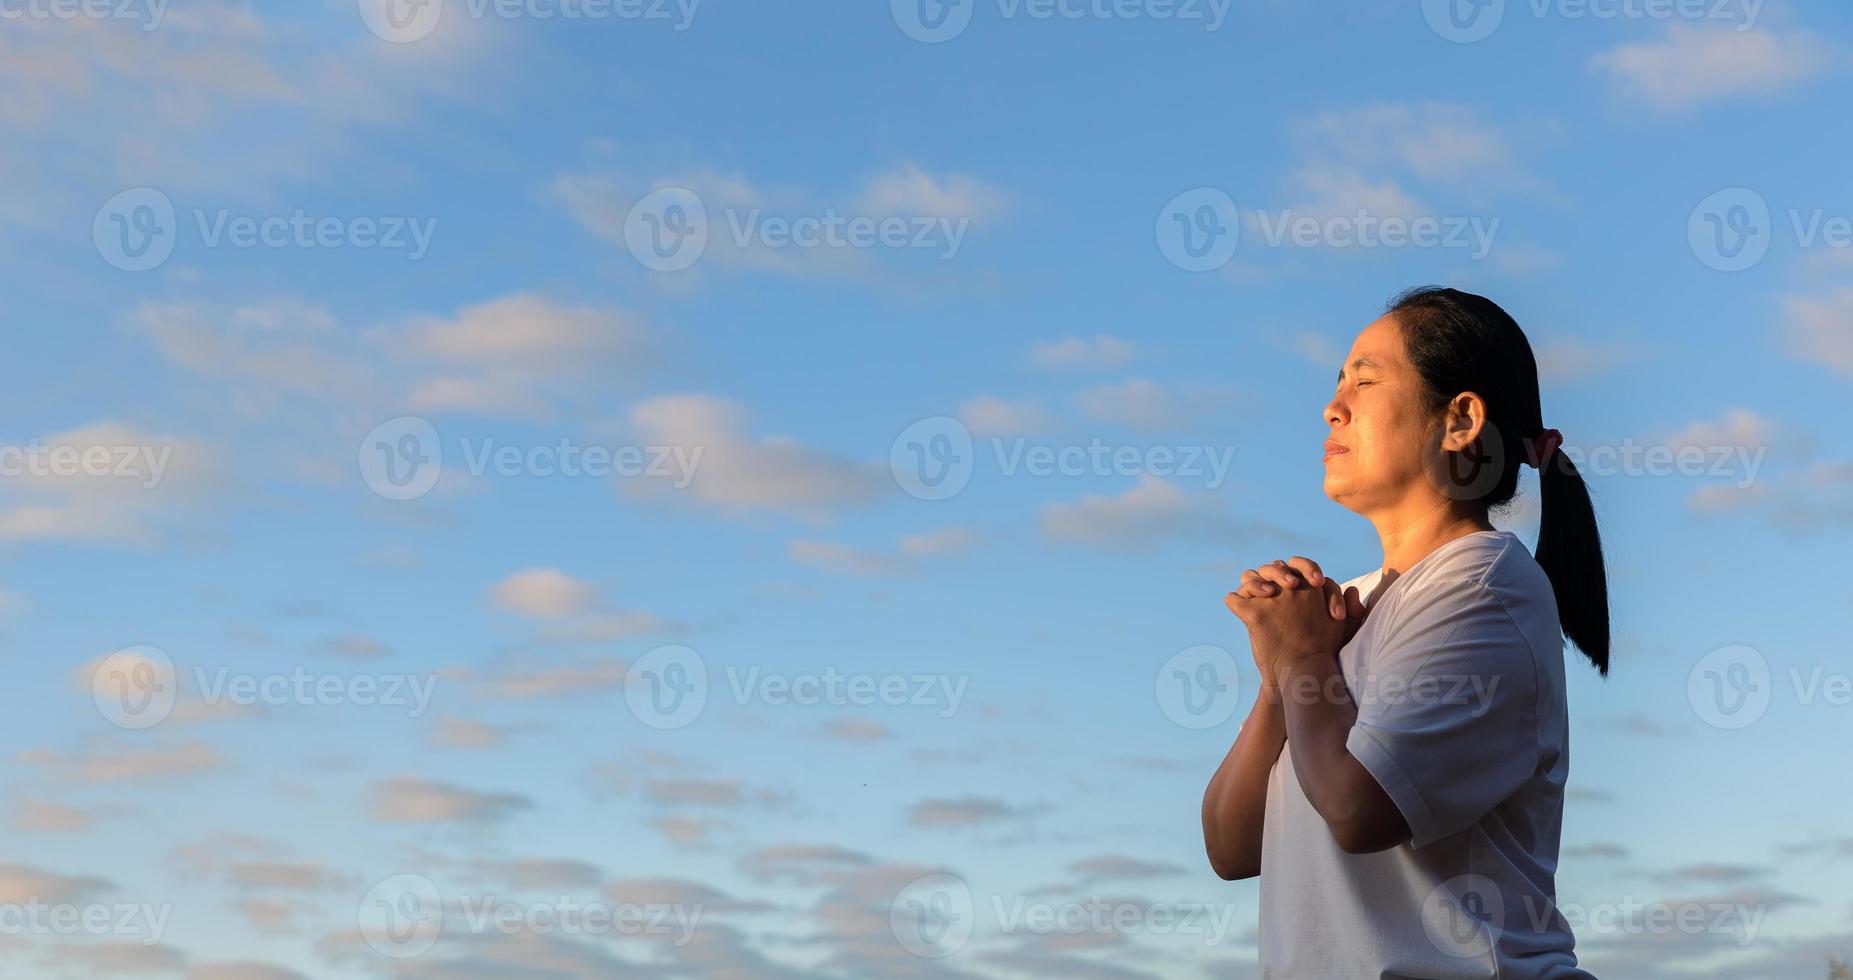 christliches lebenskrisengebet zu gott. Frau betet um Gottes Segen, um sich ein besseres Leben zu wünschen. frauenhände beten mit der bibel zu gott. um Vergebung bitten und an das Gute glauben. foto